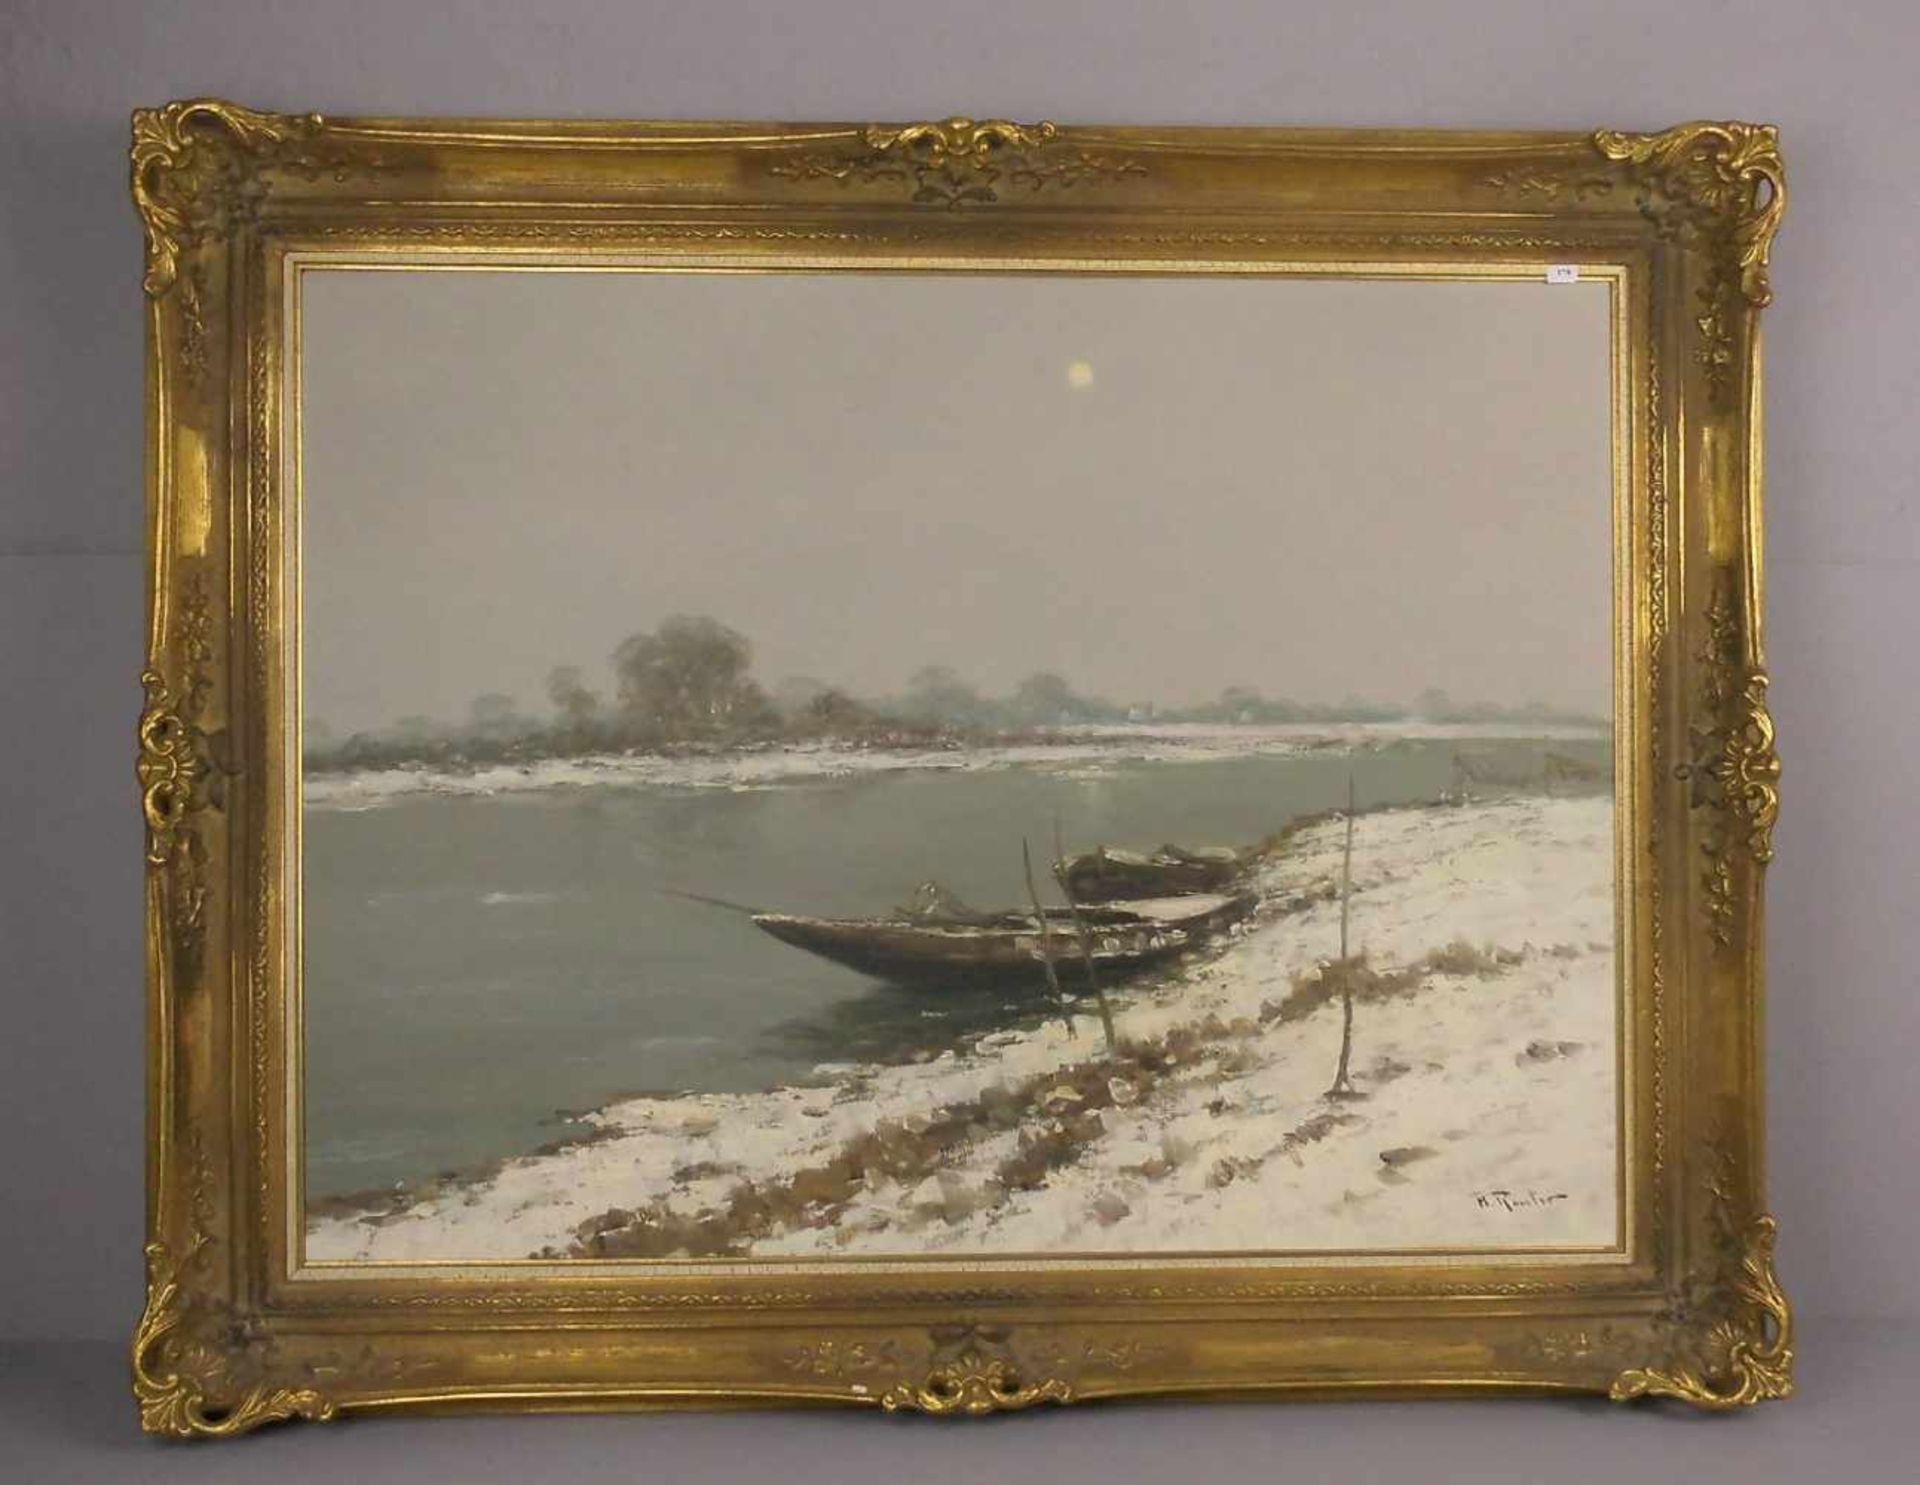 REUTER, HELMUT (Düsseldorf 1913-1985), Gemälde / painting: "Winterliche Flusslandschaft mit Booten",